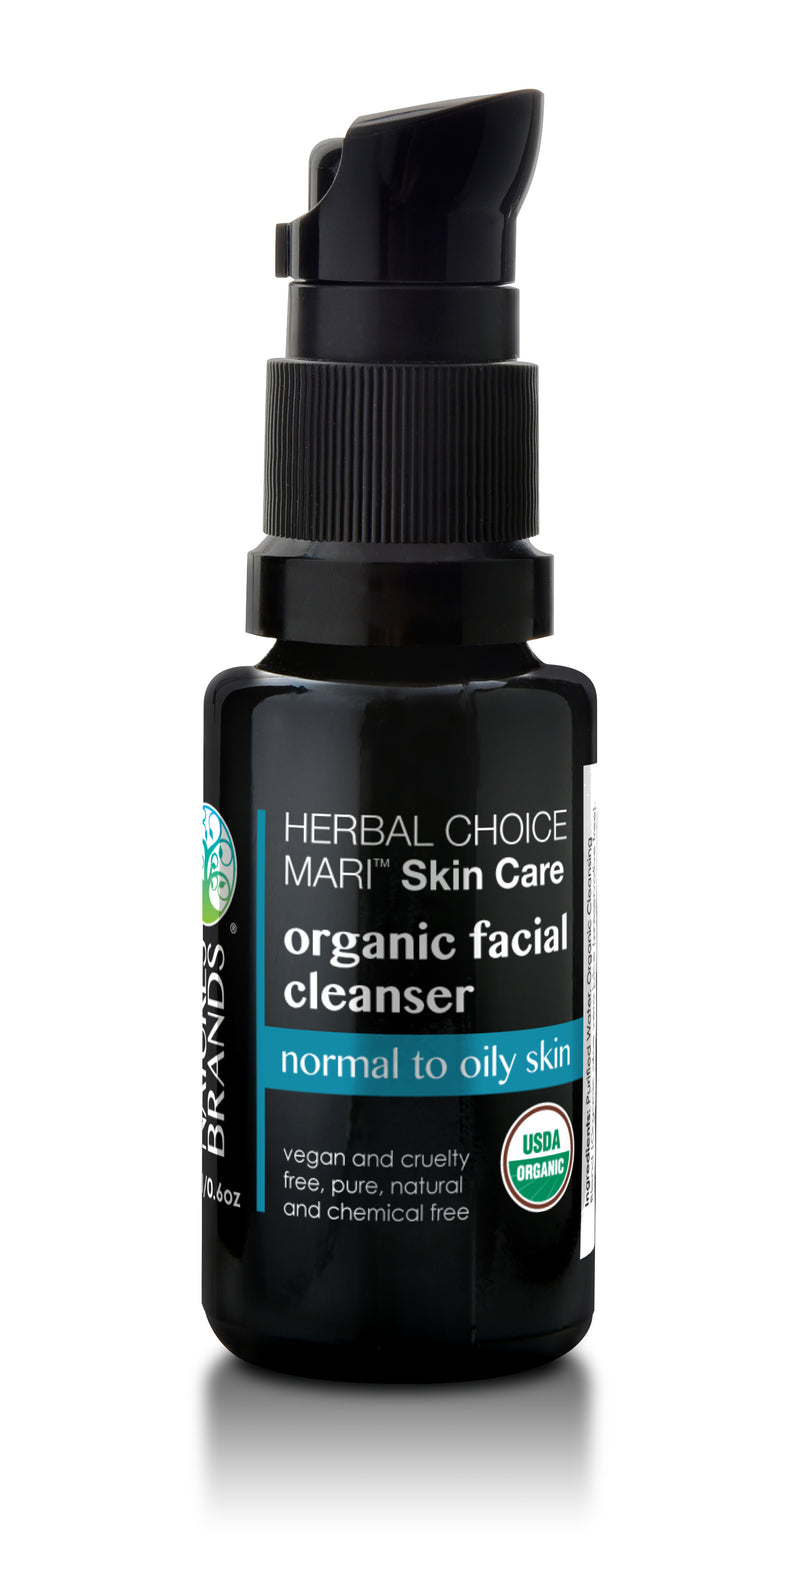 Herbal Choice Mari Organic Facial Cleanser, Normal to Oily Skin - Herbal Choice Mari Organic Facial Cleanser, Normal to Oily Skin - Herbal Choice Mari Organic Facial Cleanser, Normal to Oily Skin